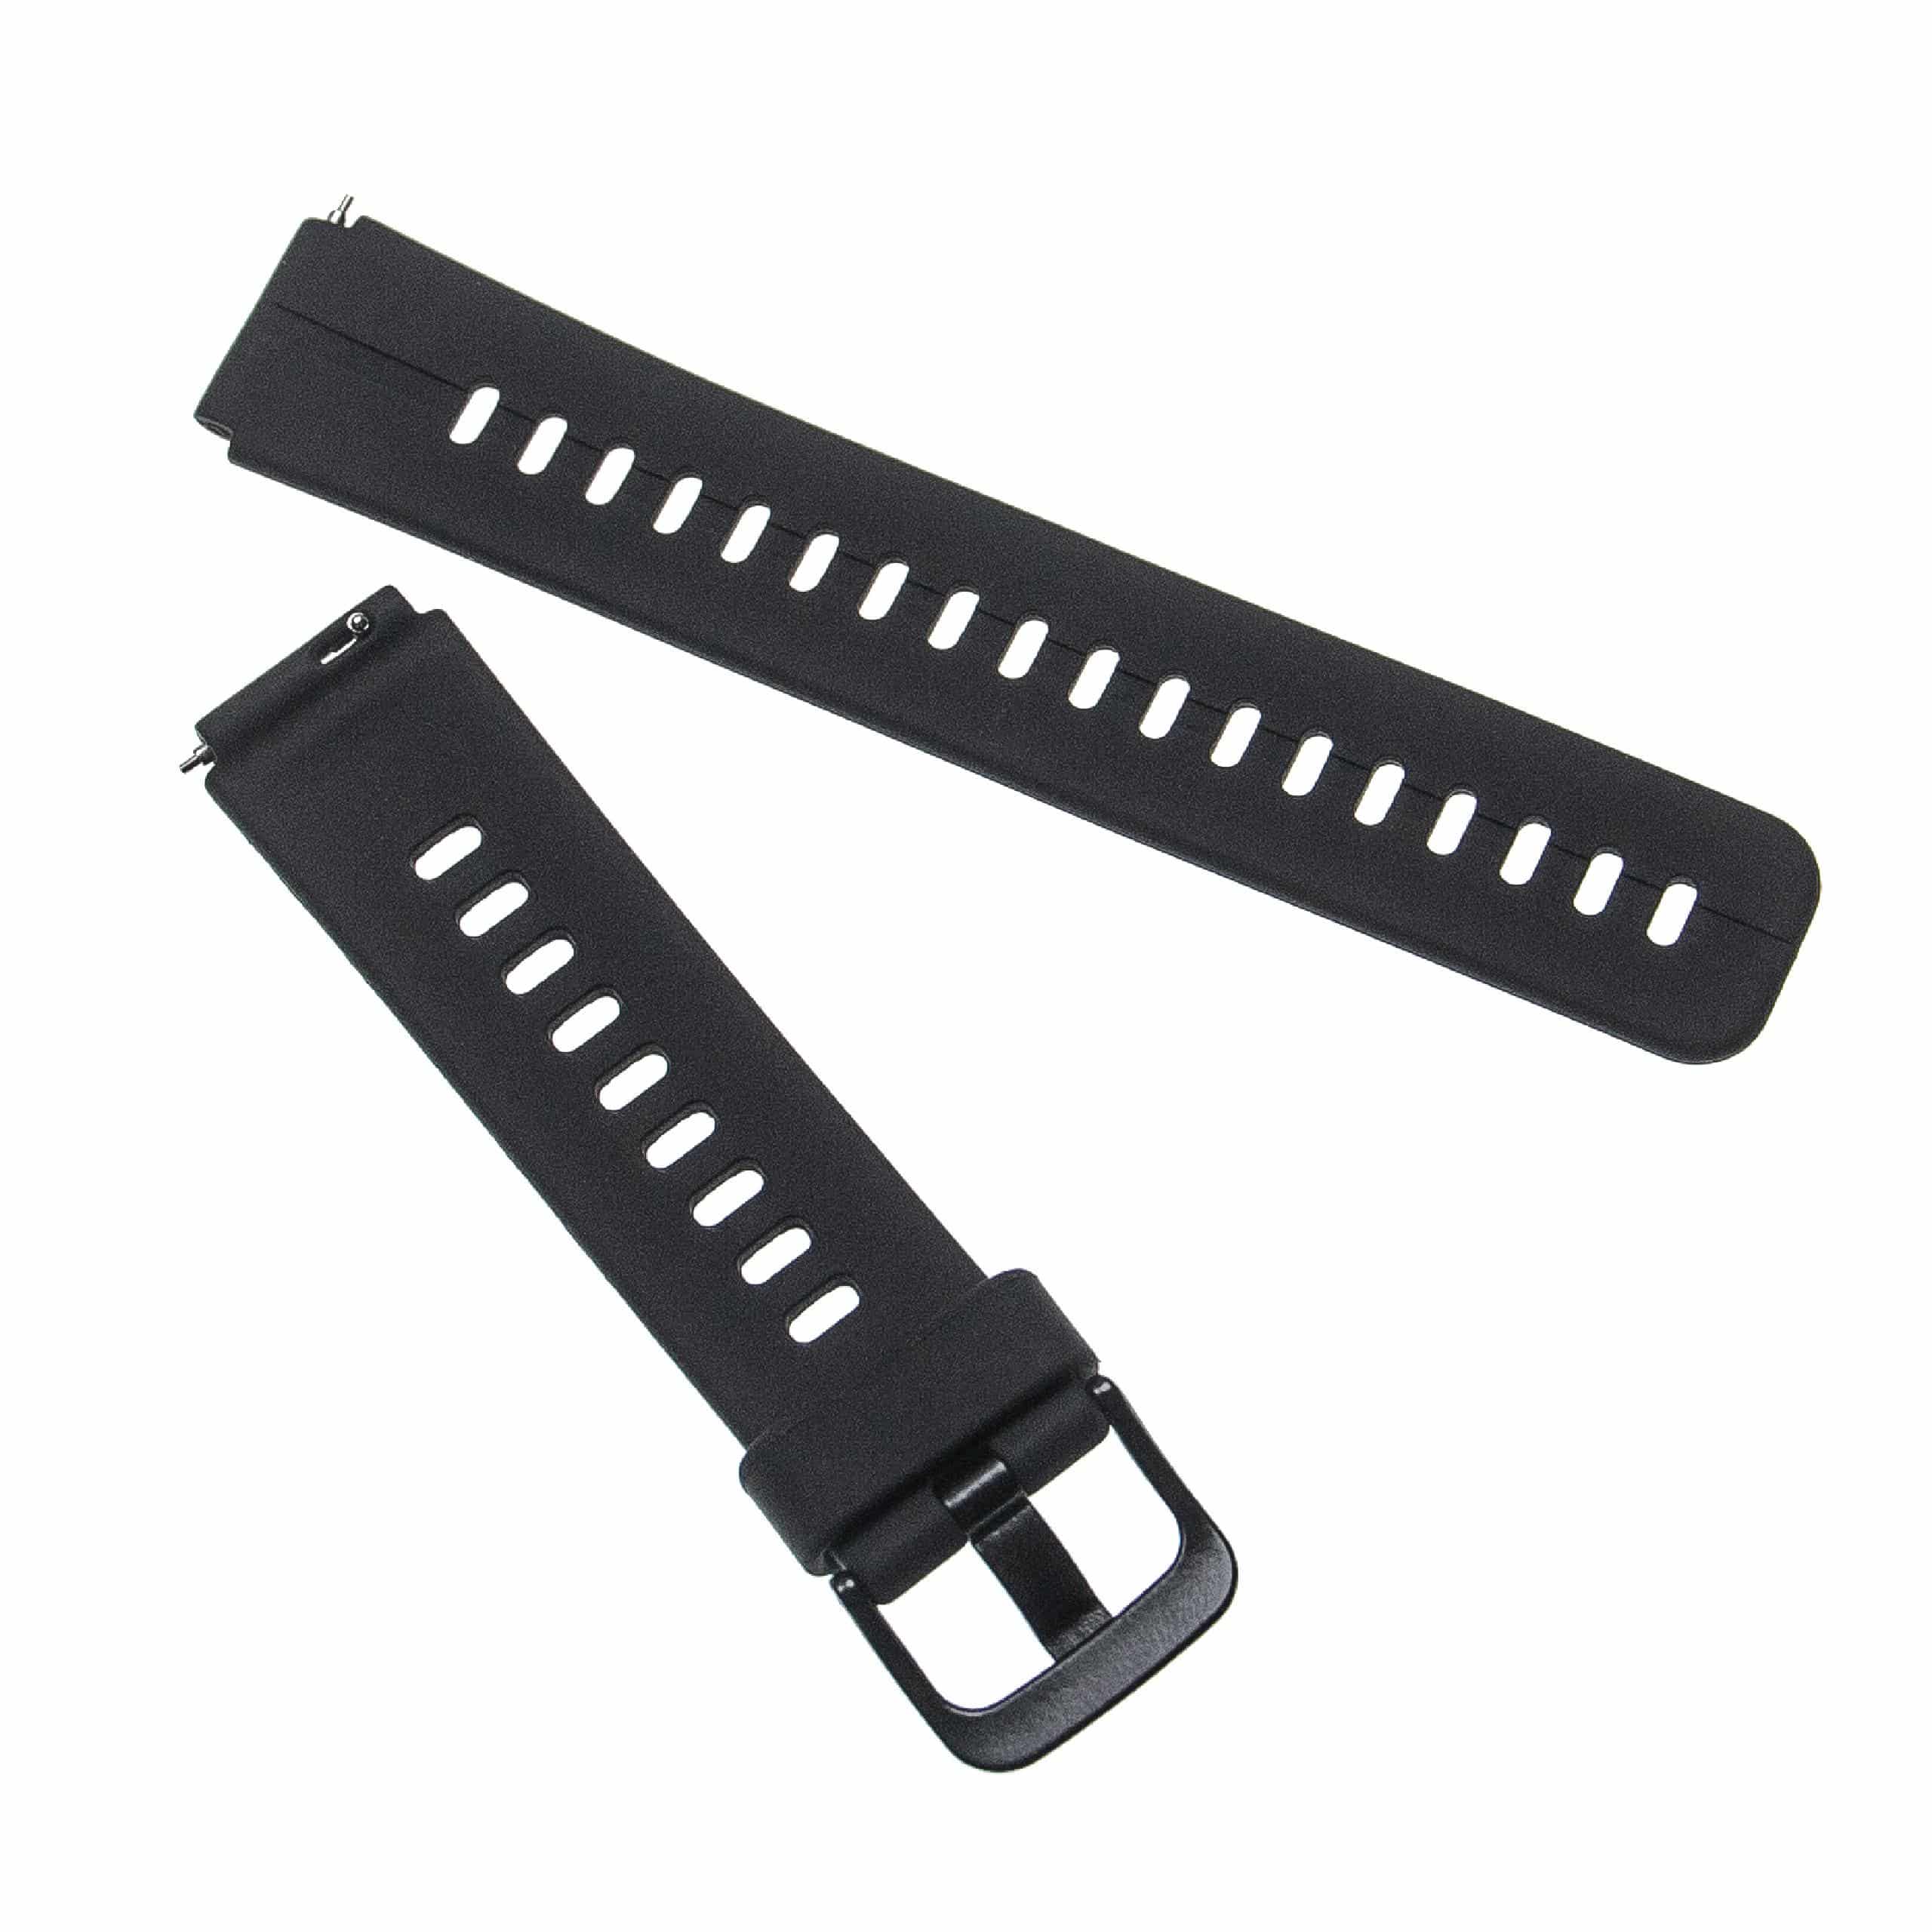 Bracelet pour montre intelligente Huawei - 11,2 + 8,8 cm de long, 16mm de large, silicone, noir